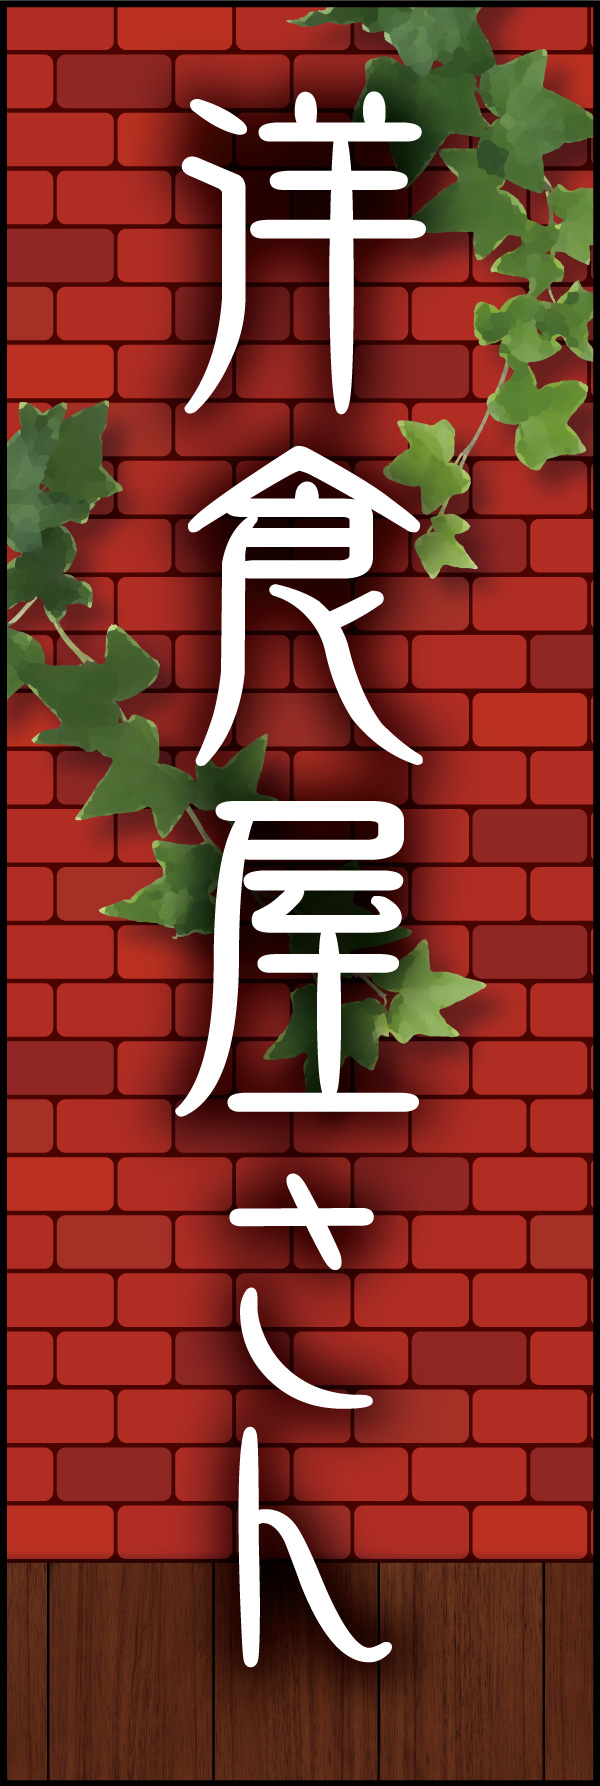 洋食屋さん 03「洋食屋さん」ののぼりです。赤煉瓦をバックに、懐かしい洋食屋さんをイメージしてデザインしました。(Y.M) 